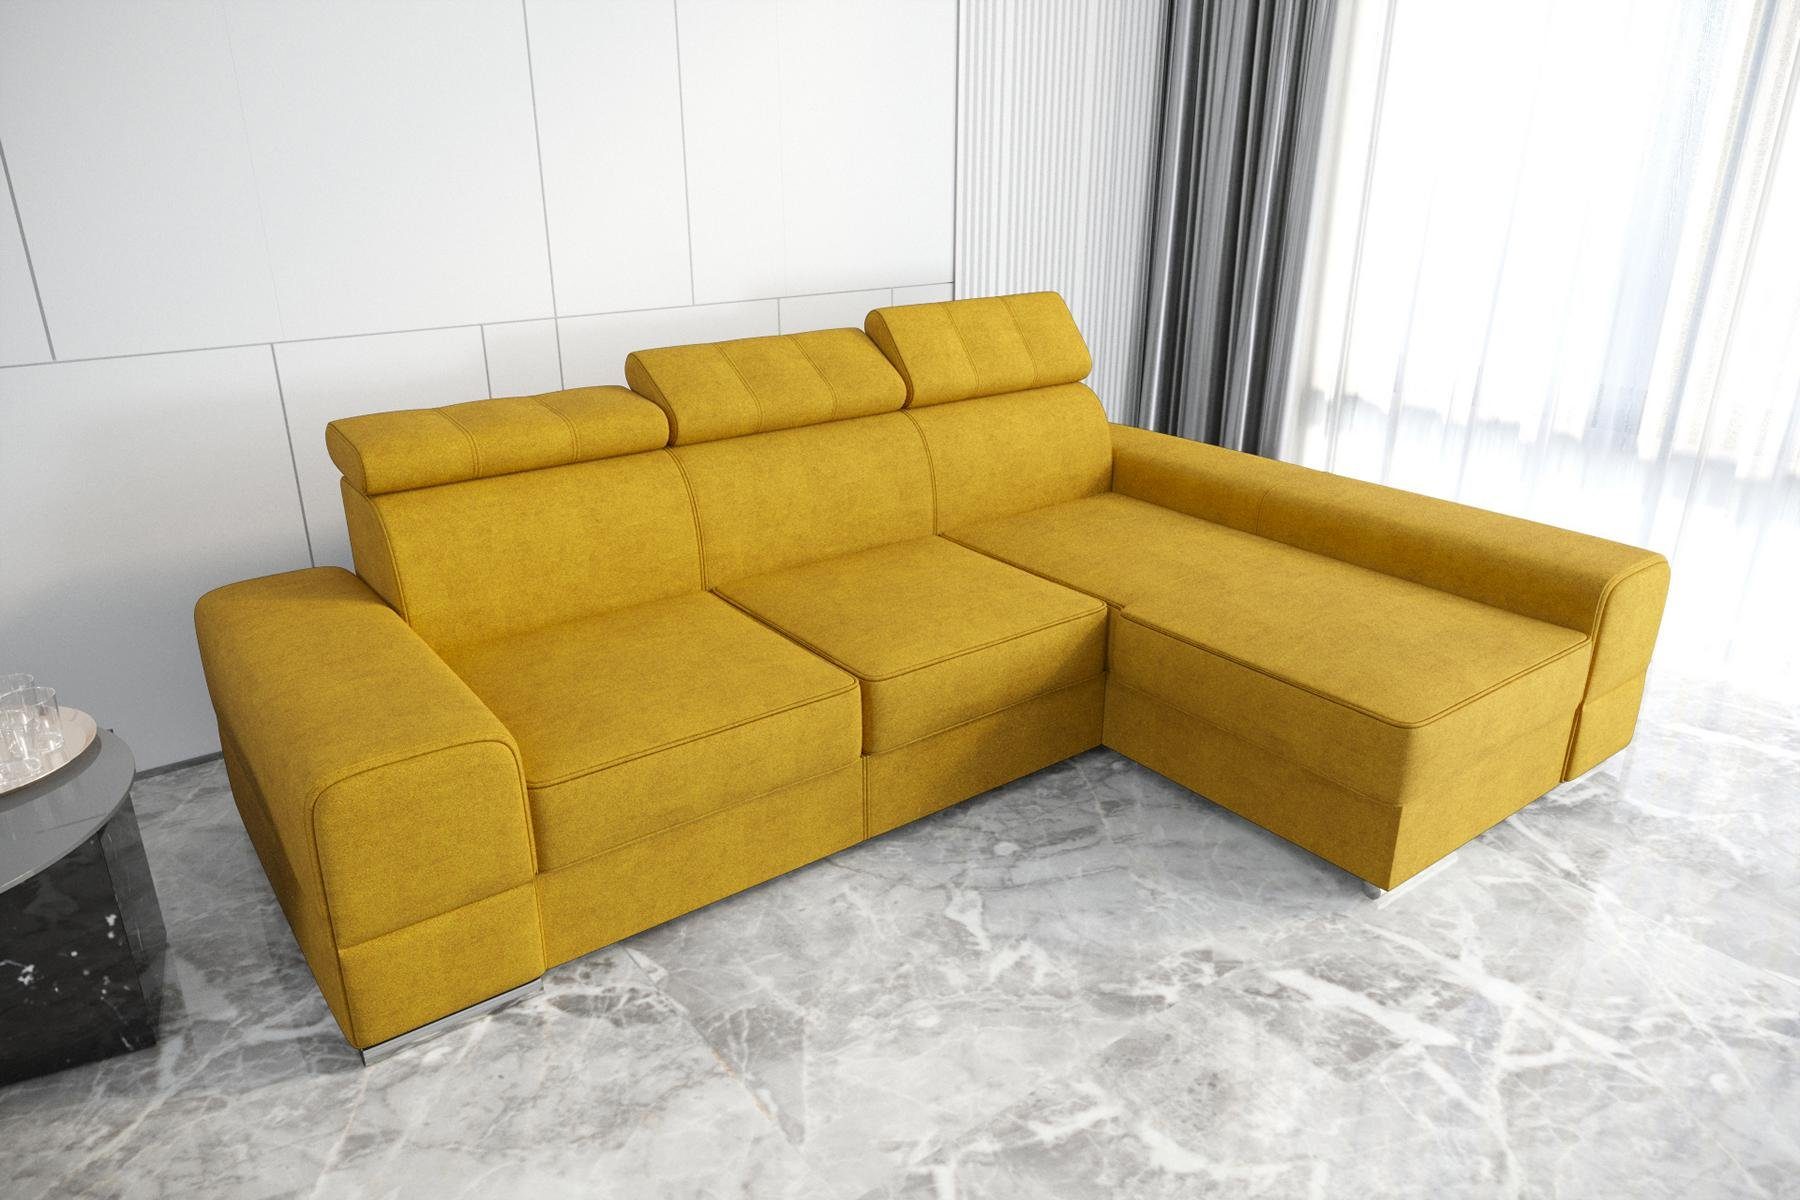 JVmoebel Ecksofa Designer Beiges Ecksofa L-Form Luxus Couch Wohnzimmer Möbel Neu, Made in Europe Gelb